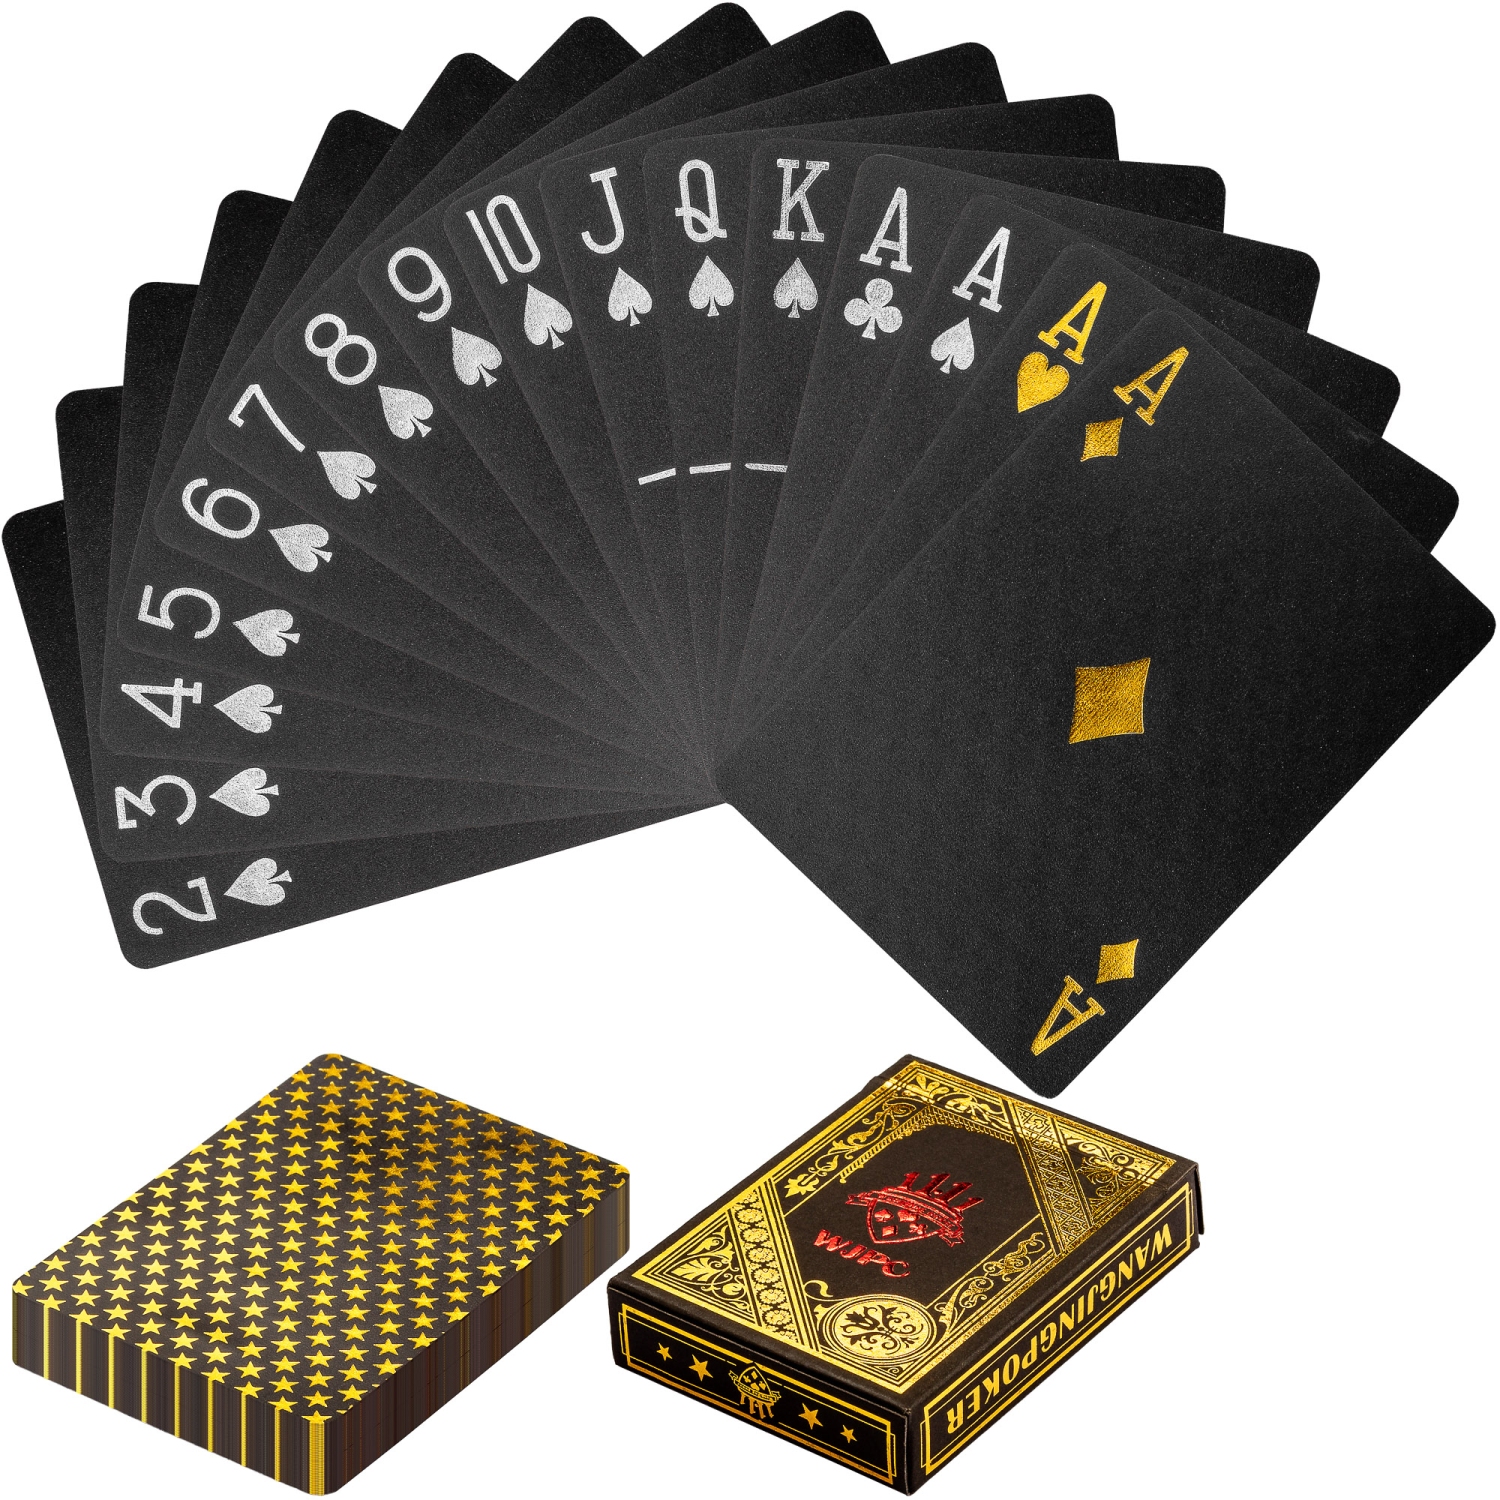 Poker kaarten – Spelkaarten – Luxe set – 88 mm x 63 mm – Zwart – Goud